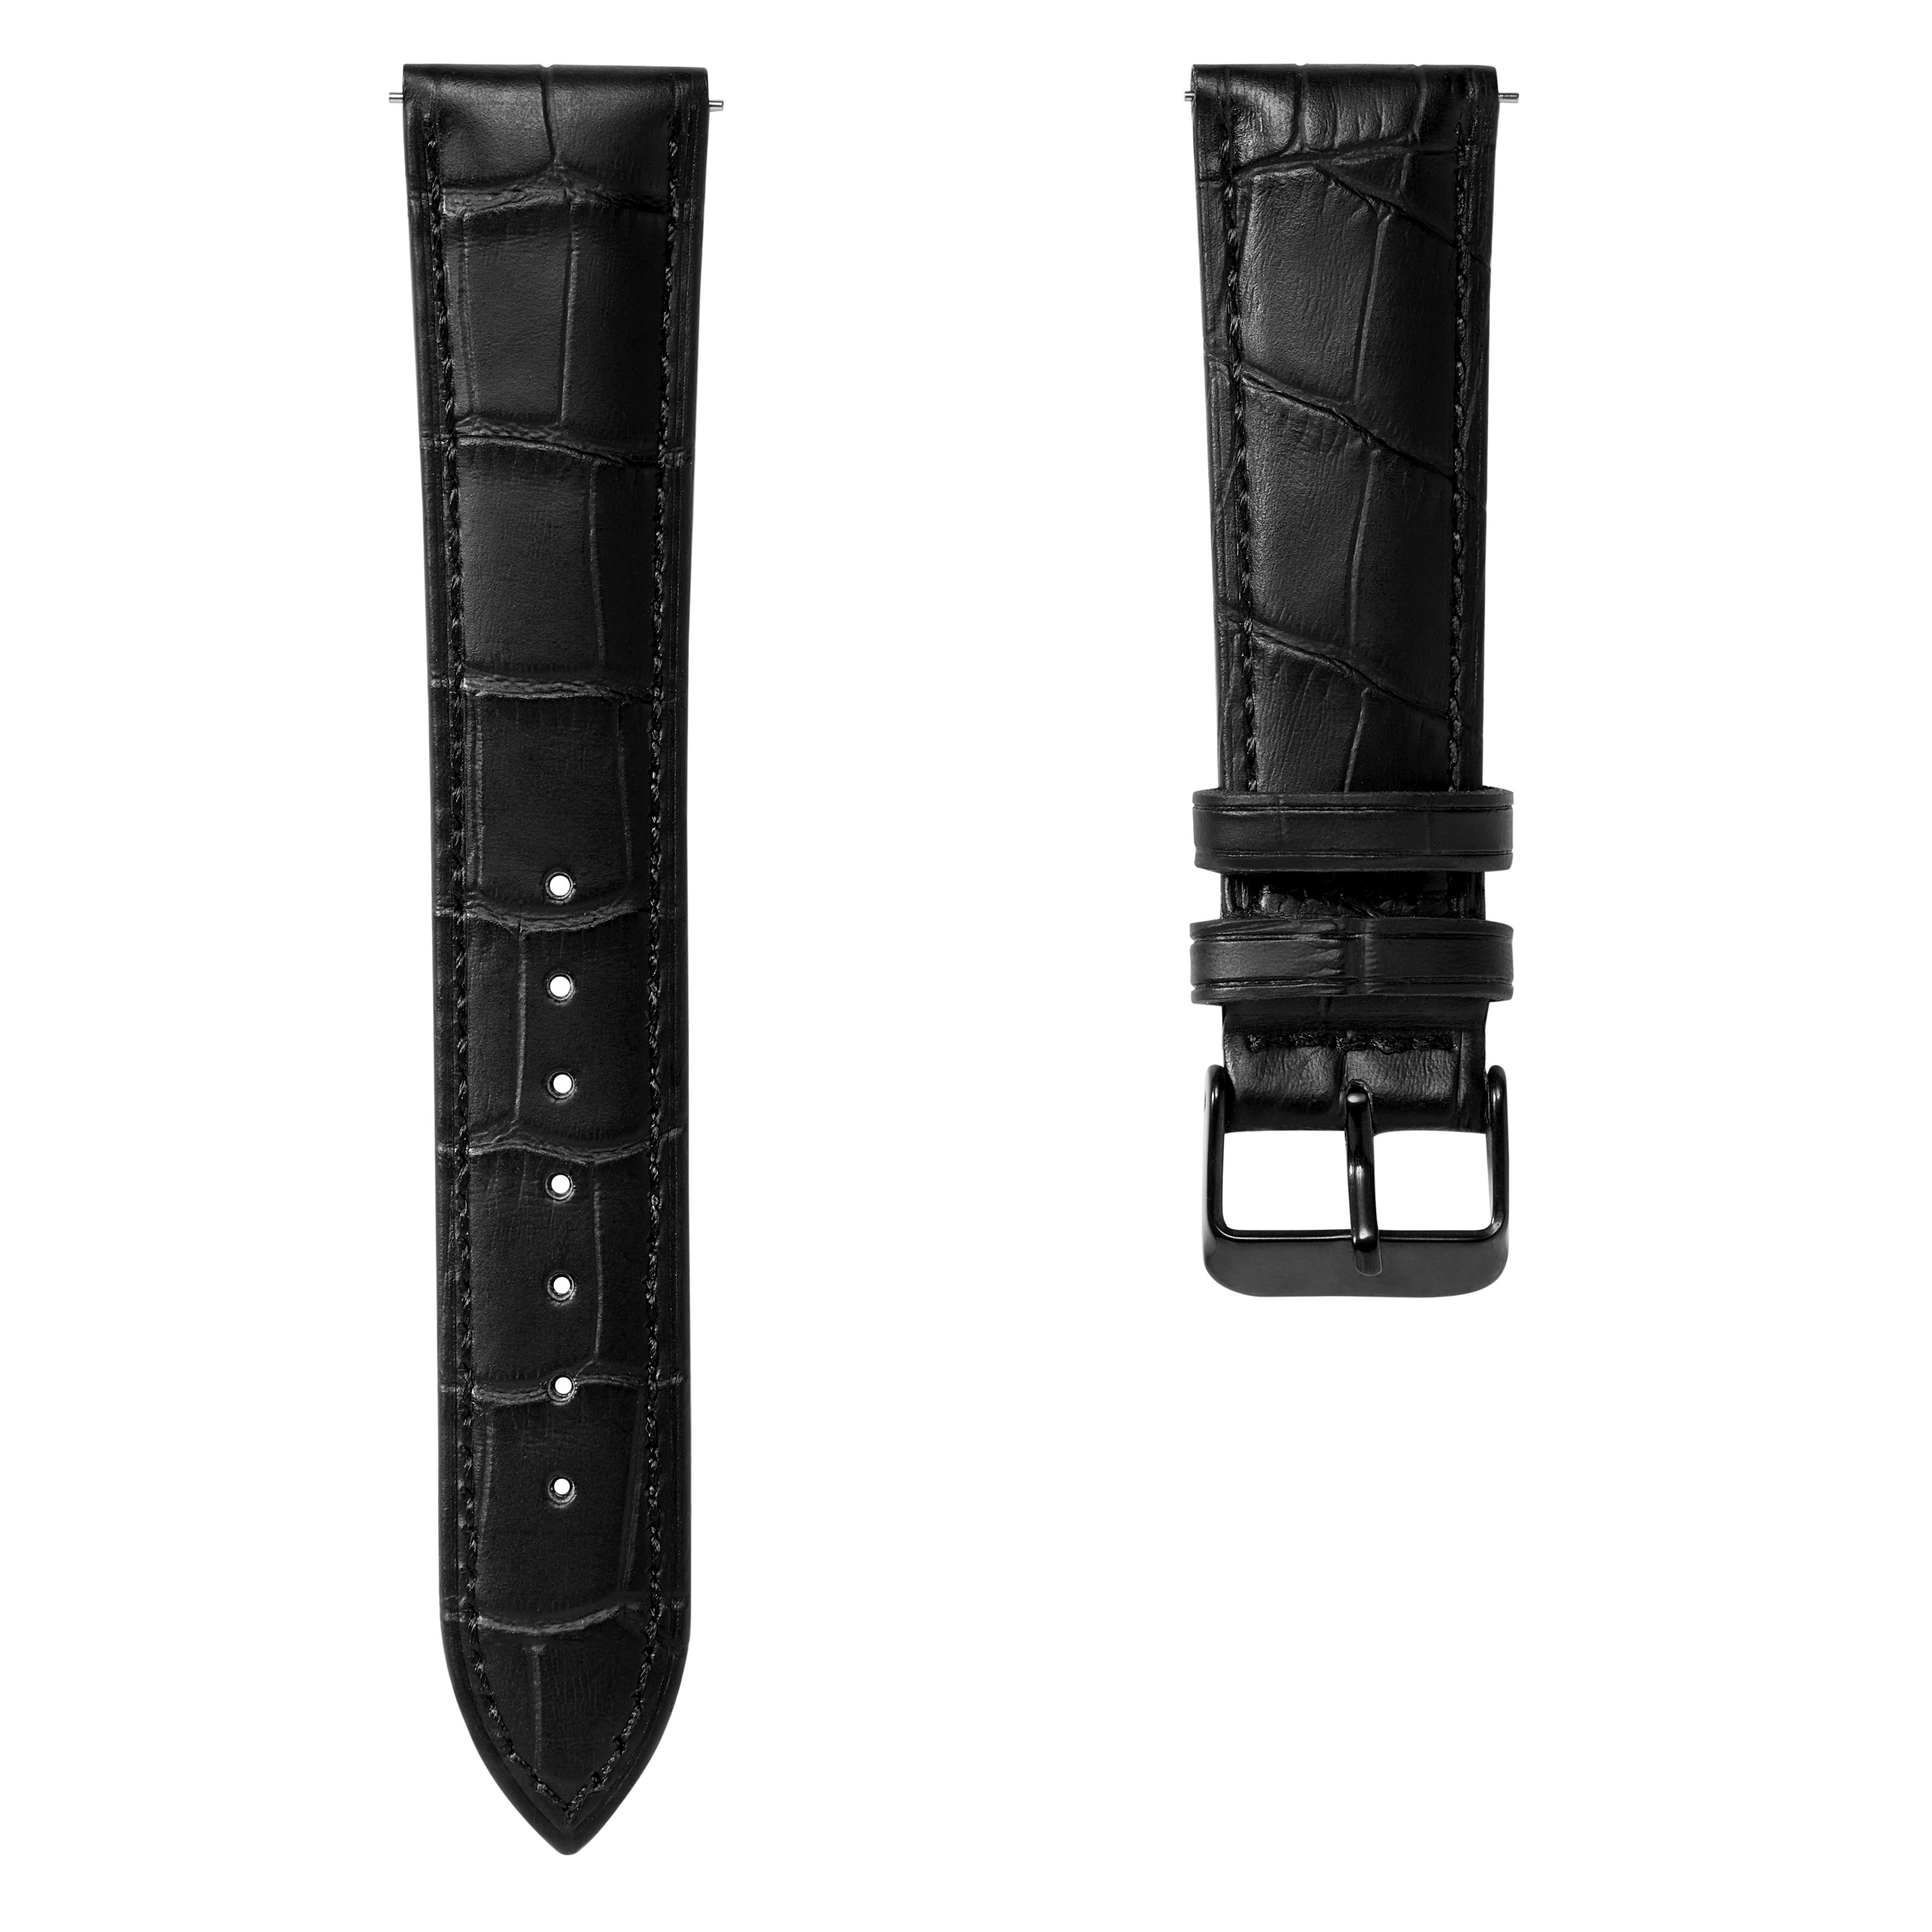 Correa de reloj de cuero negro con relieve de cocodrilo de 21 mm y hebilla negra - De liberación rápida